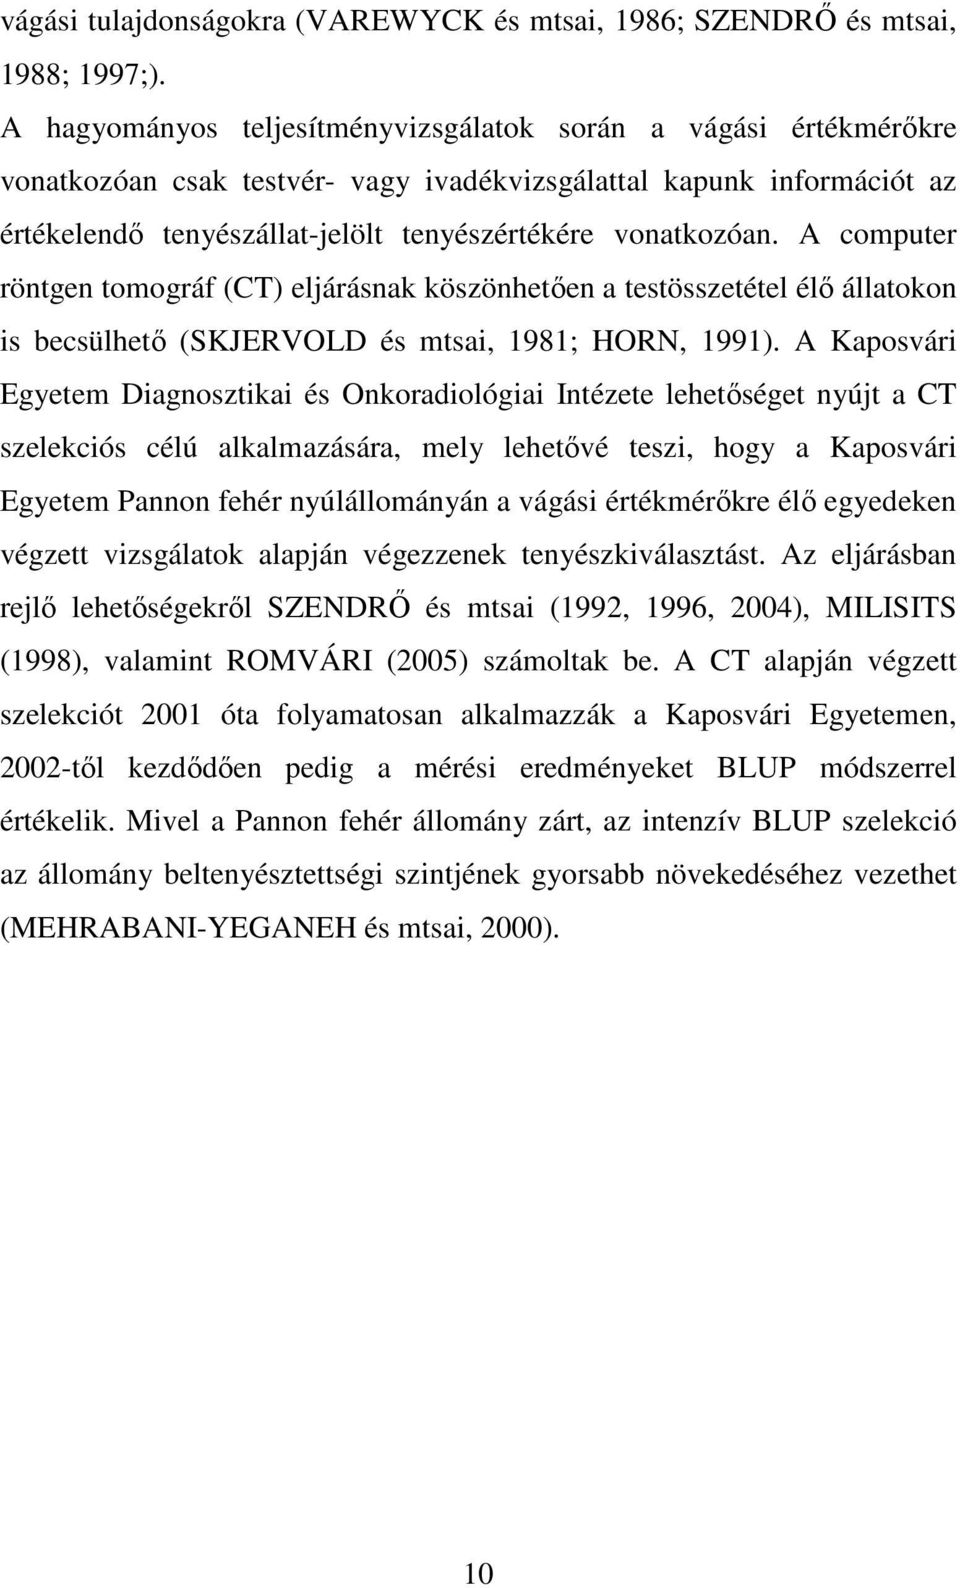 A computer röntgen tomográf (CT) eljárásnak köszönhetıen a testösszetétel élı állatokon is becsülhetı (SKJERVOLD és mtsai, 1981; HORN, 1991).